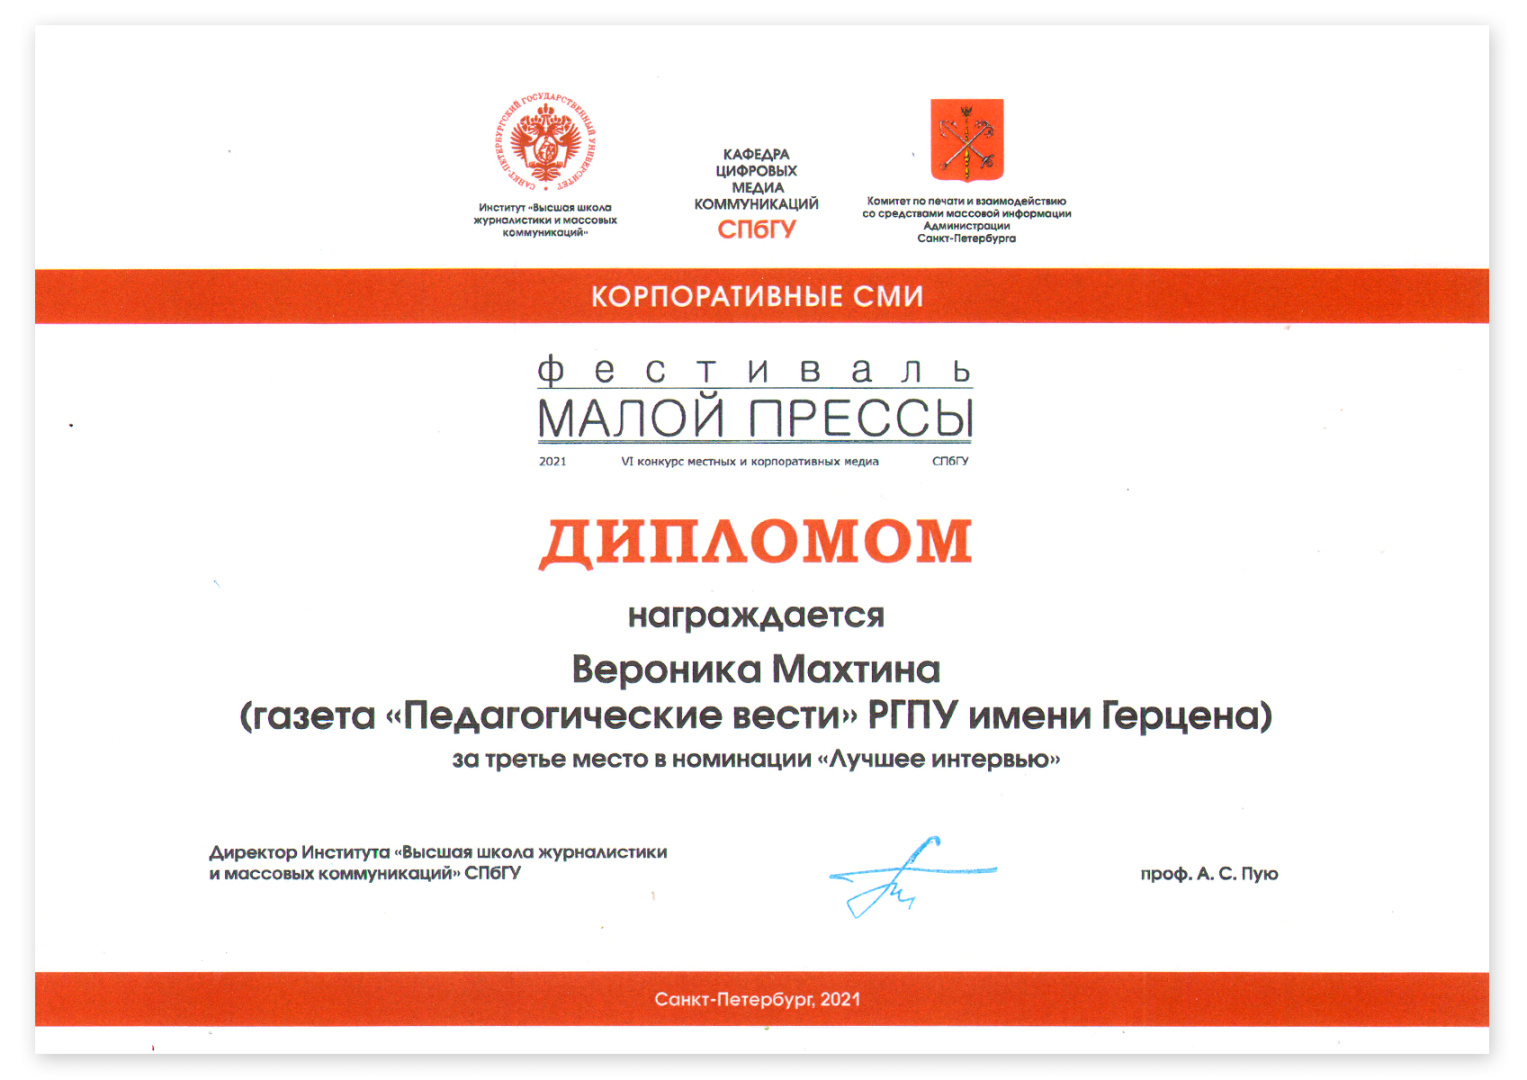 Диплом победителя журналистского конкурса Малая пресса Санкт-Петербурга ВМ Махтина.jpg